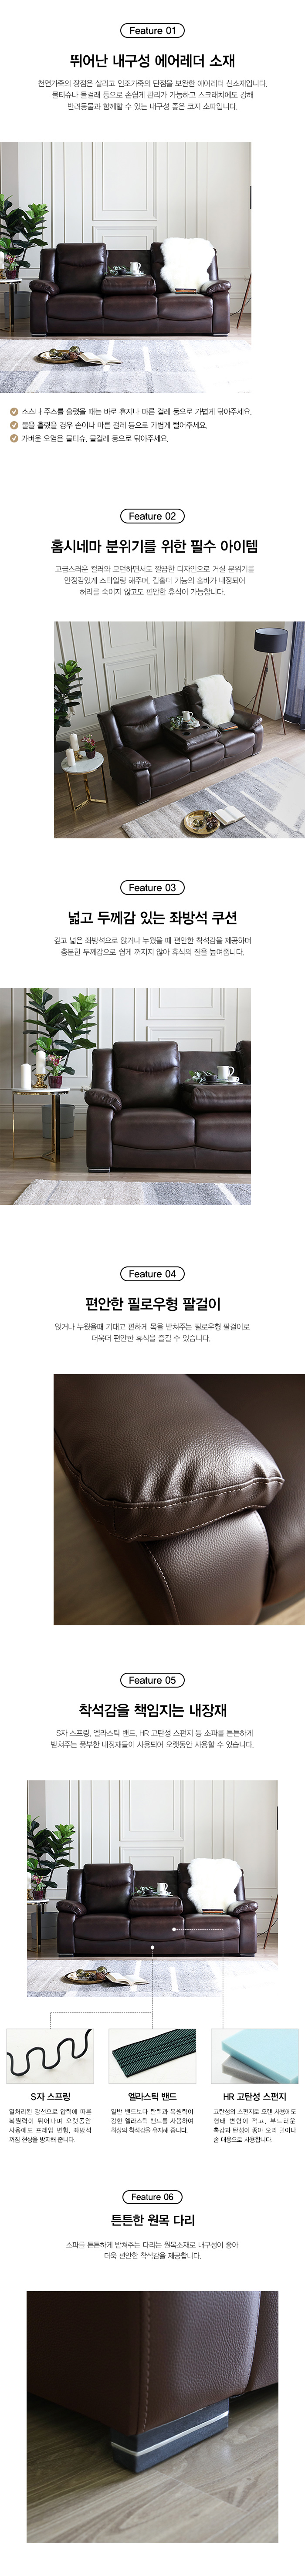 700_prime-3-sofa_01_brown.jpg